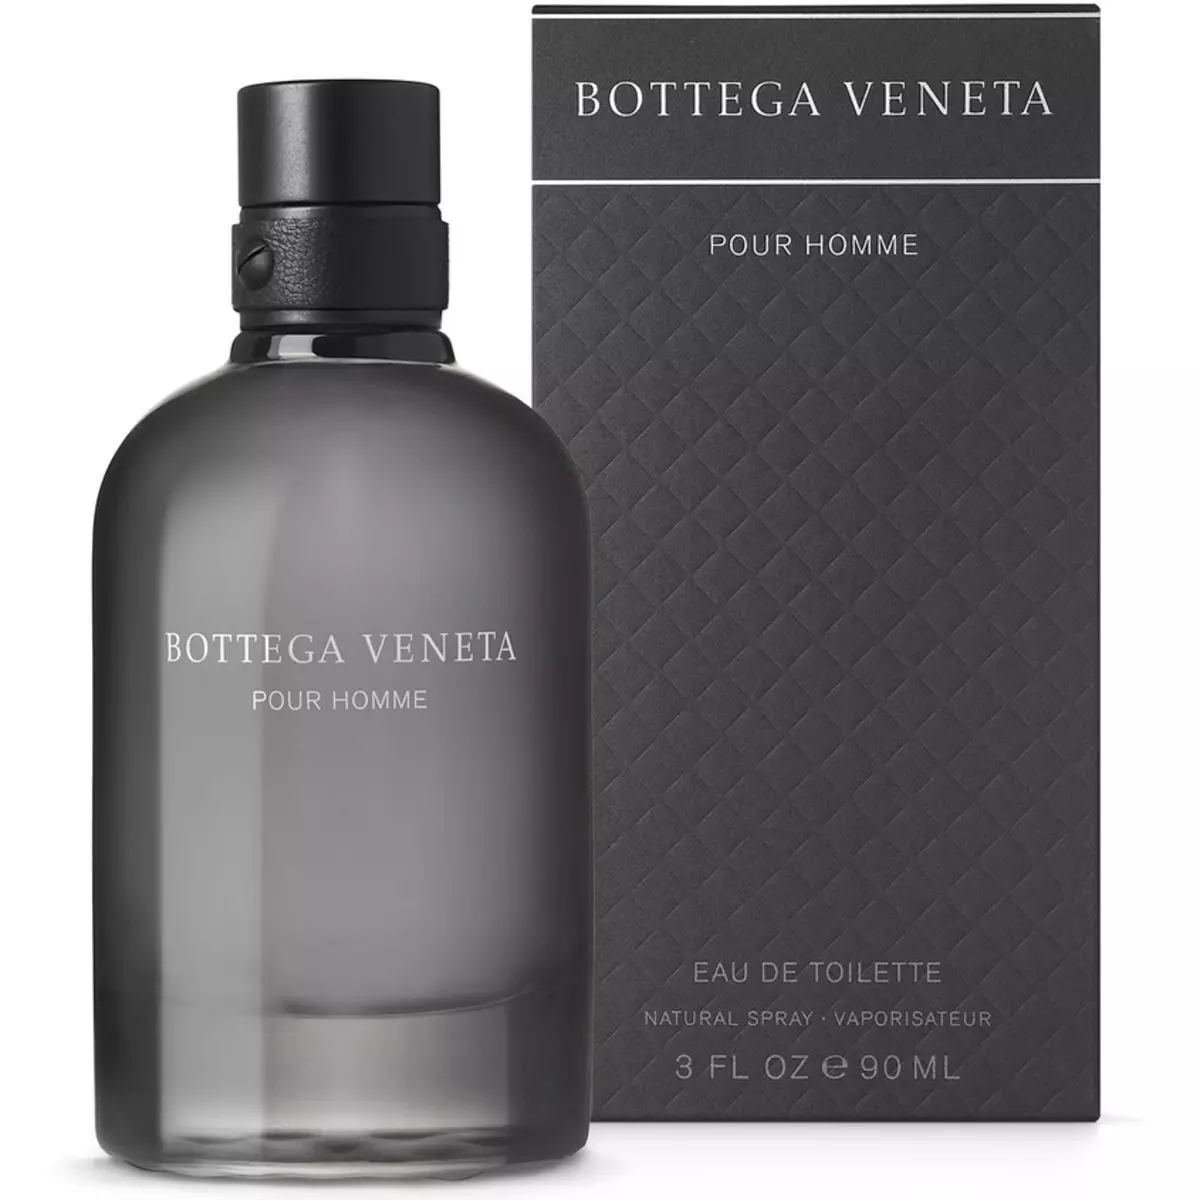 Bottega Veneta parfüm: Női és férfi parfüm, csomó, illúzió és egyéb öltözködés, illatok 25257_15